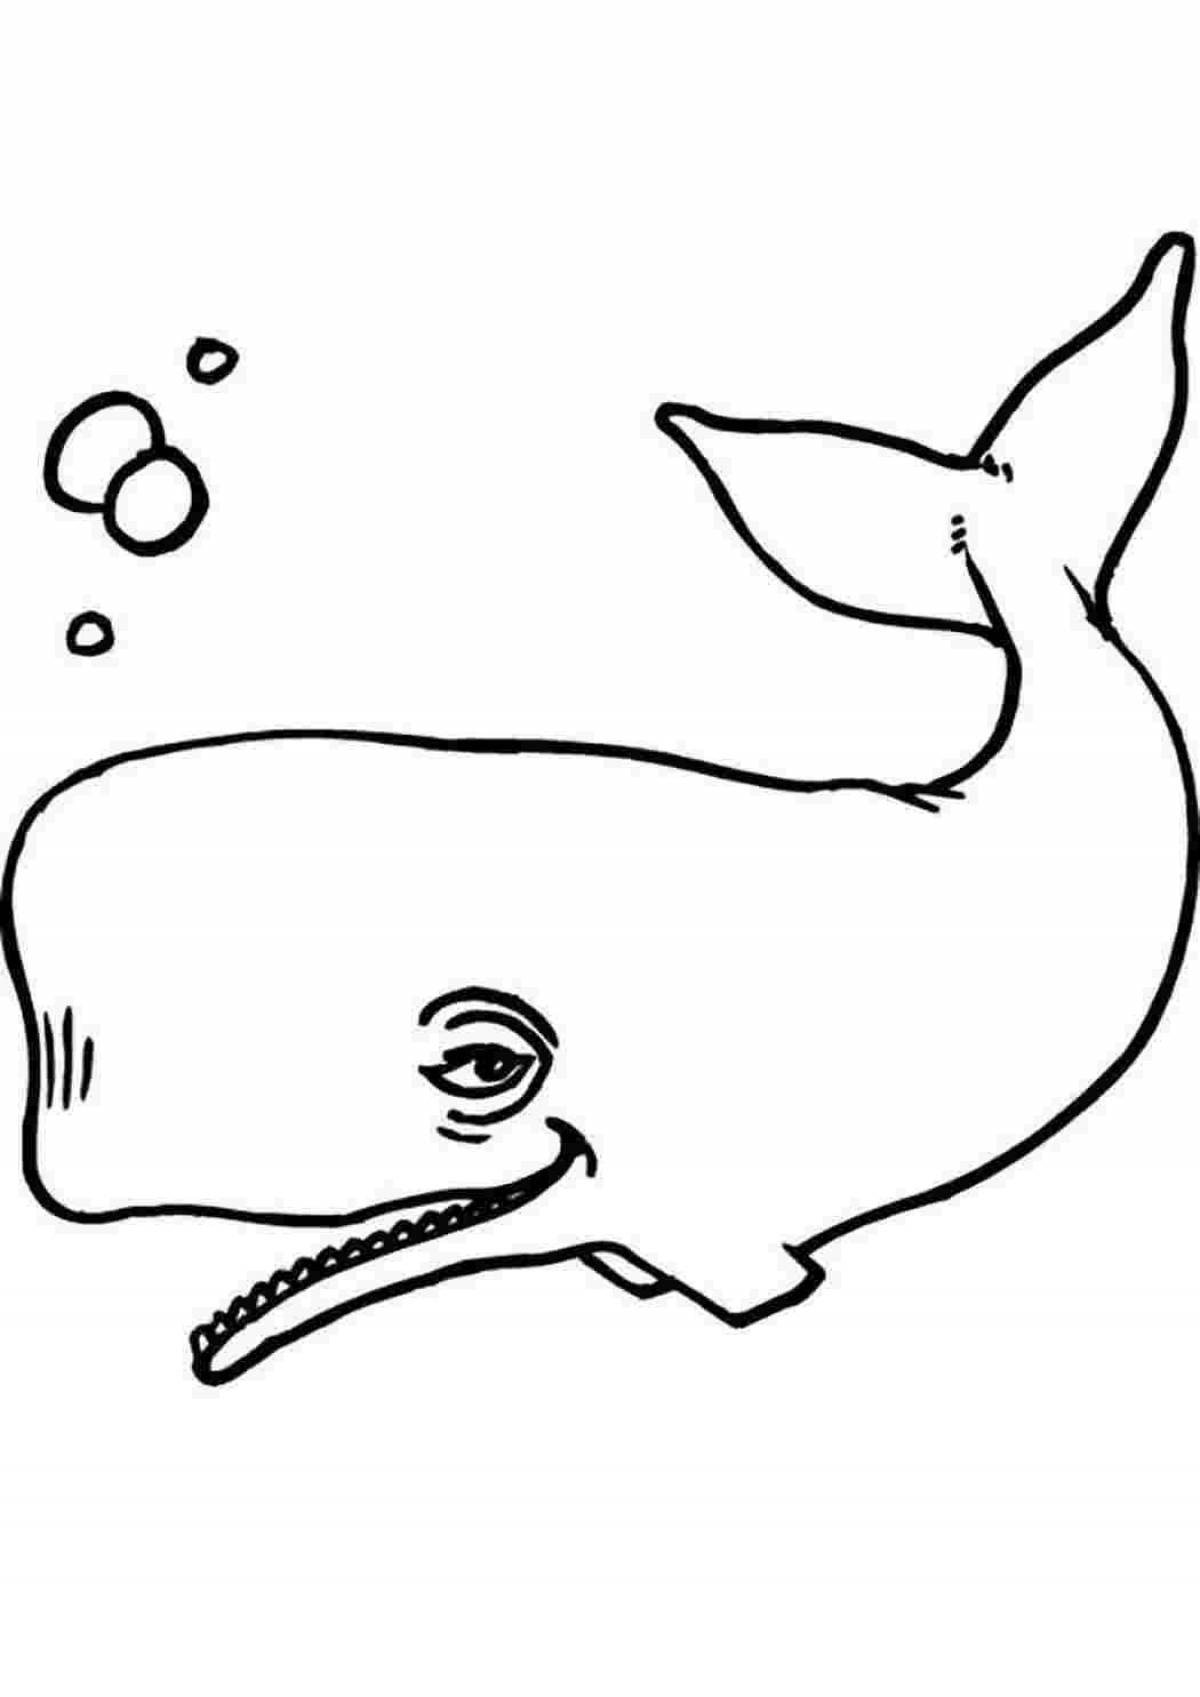 Художественная раскраска рисунок кита